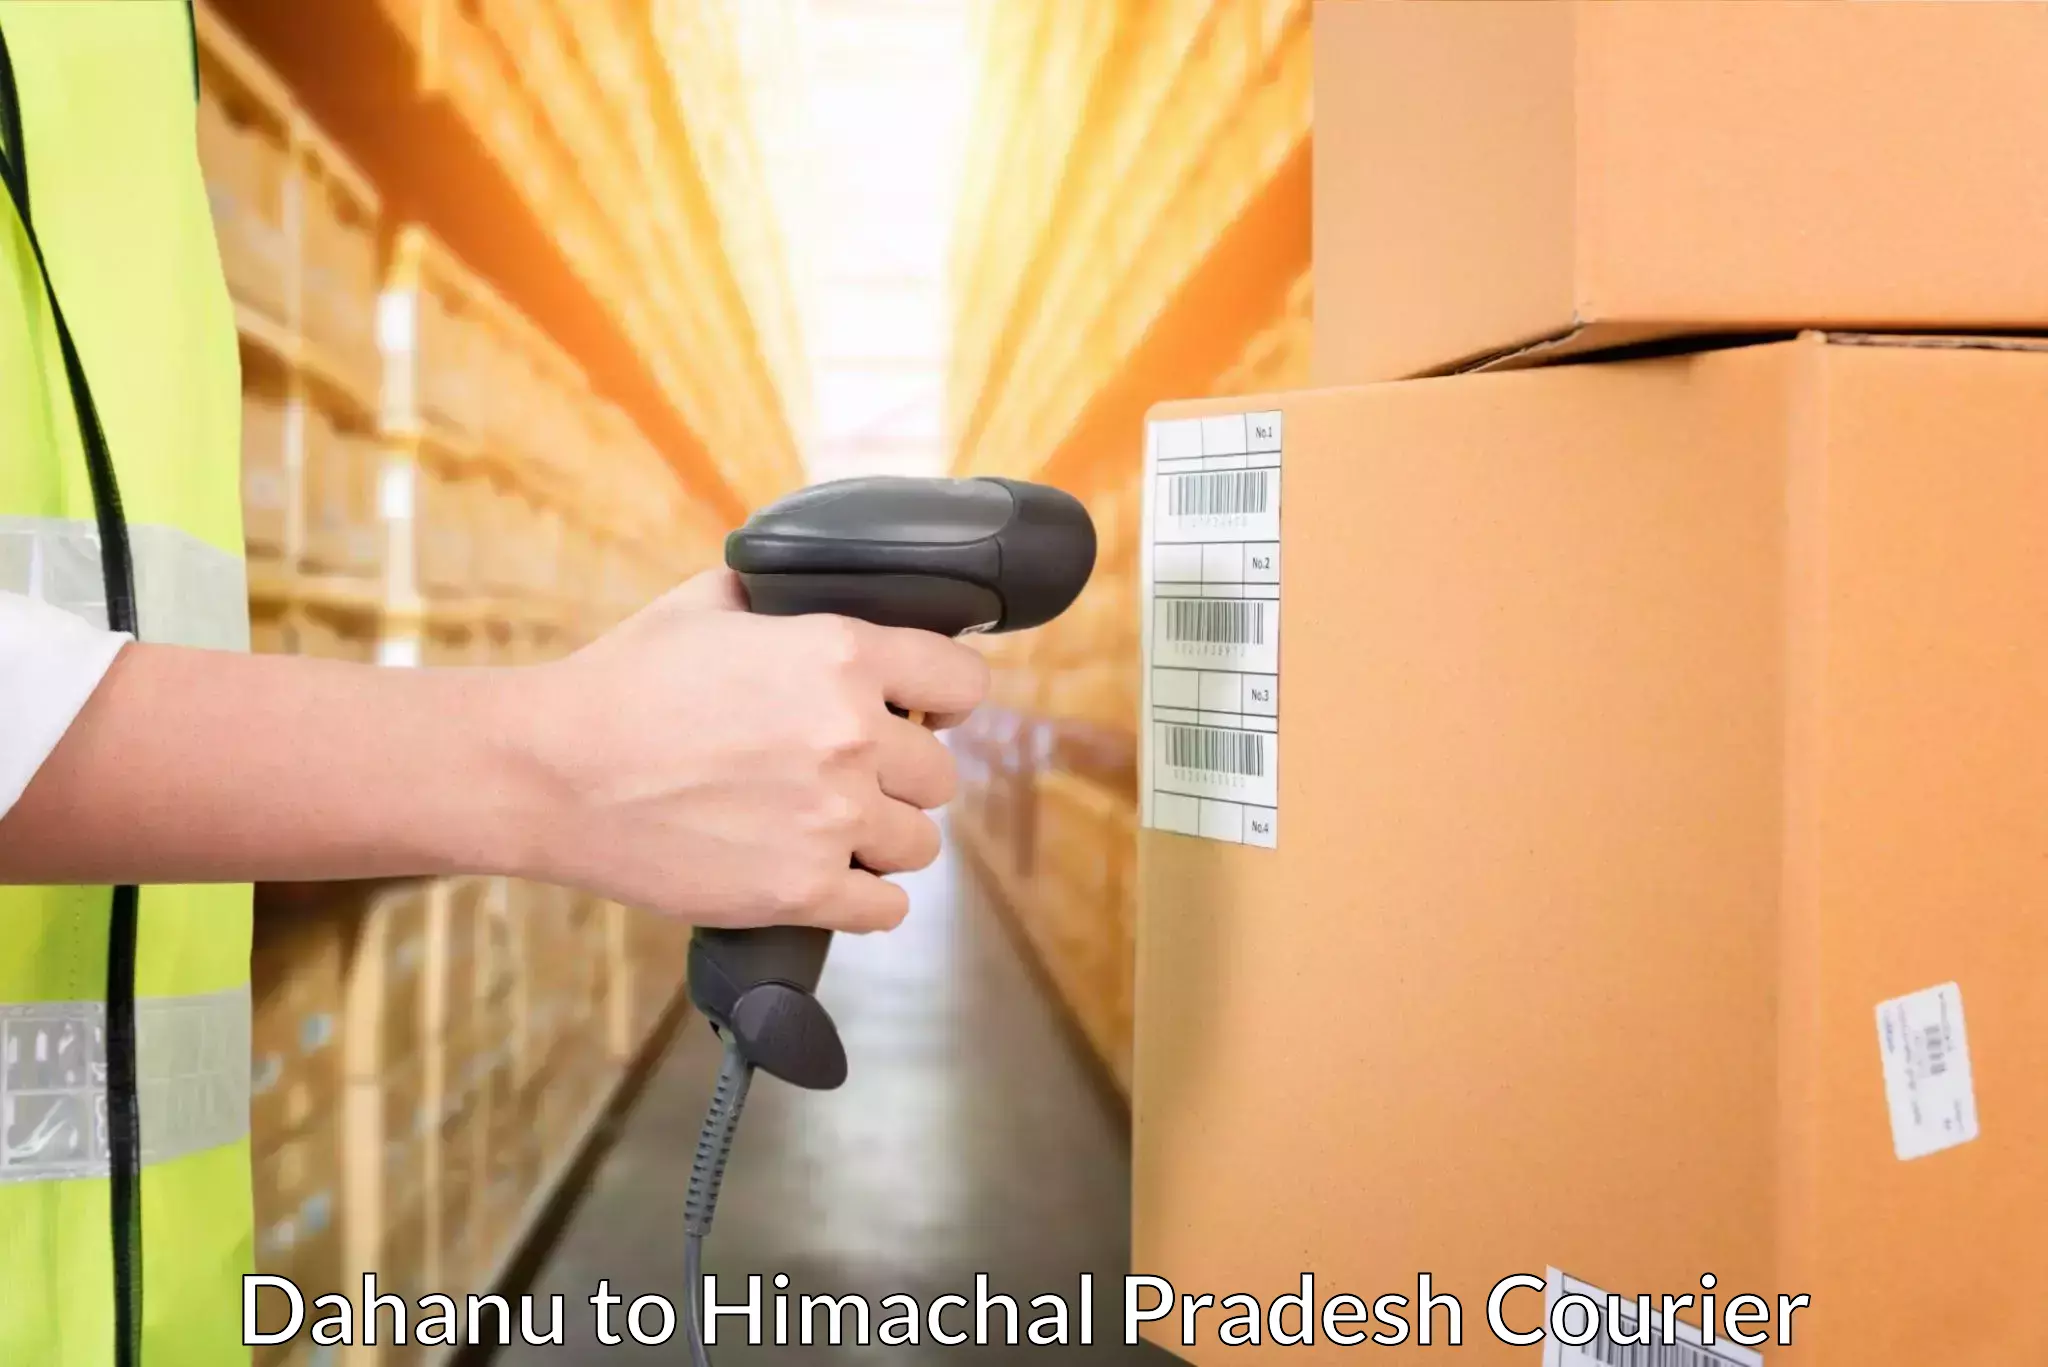 High-capacity parcel service Dahanu to Solan